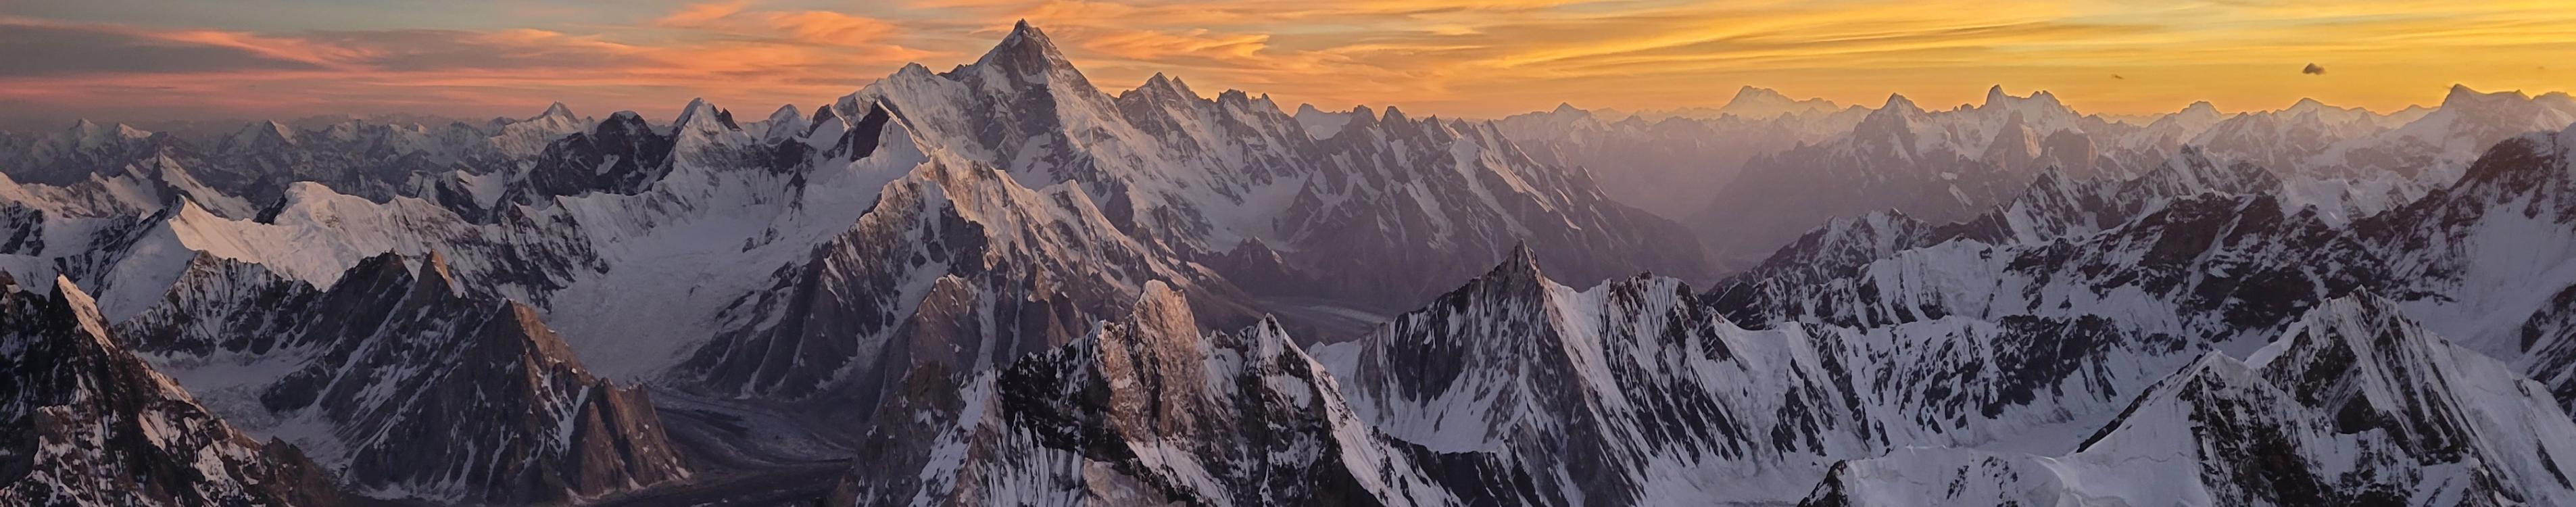 Sunrise over Karakorum Range. Photo by Sarah Strattan ’11.